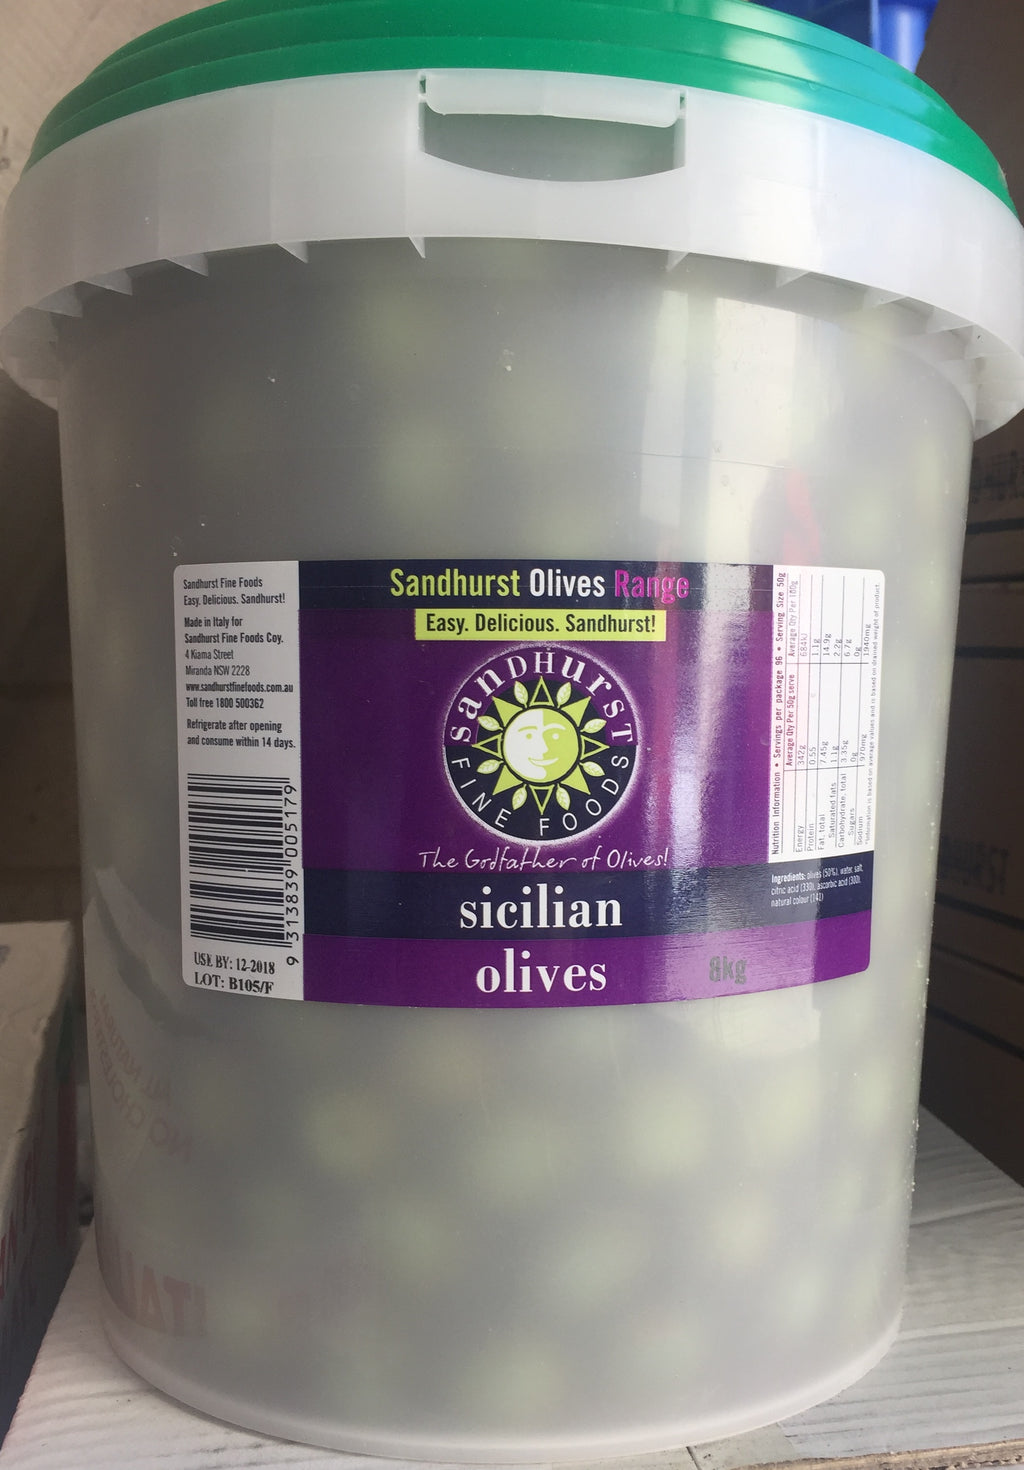 Green Whole Sicilian Olives 8kg (NDW5kg) Tub Sanrilla/Nocellara